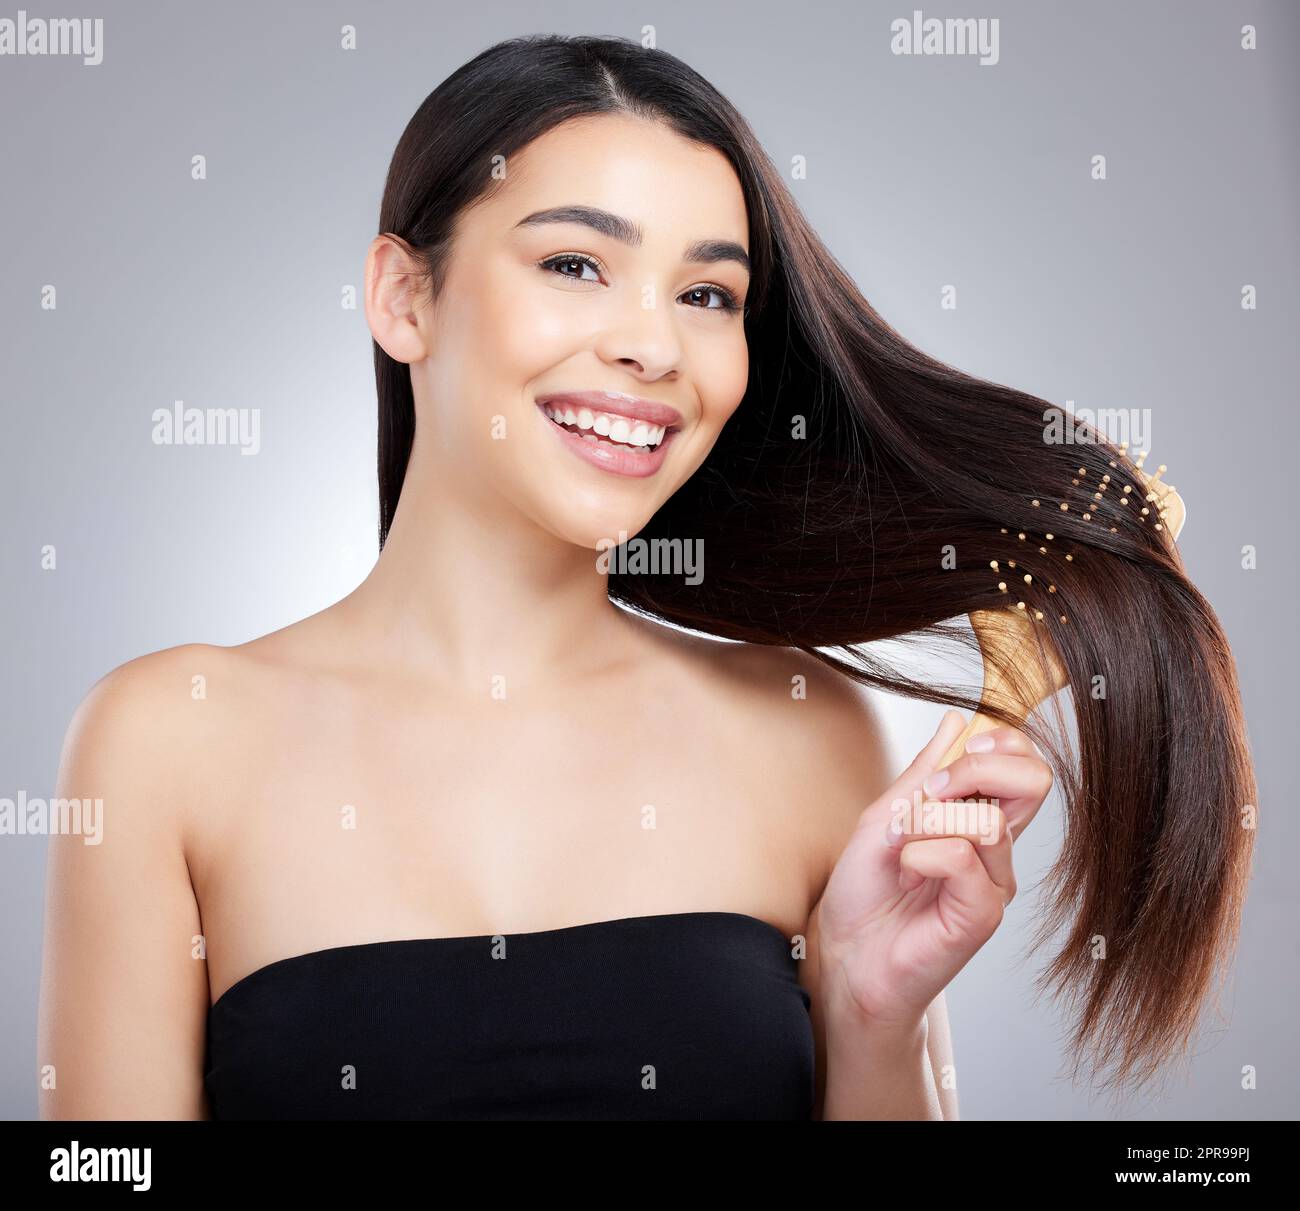 Perché mi rifiuto di affrontare i nodi. Ritratto di studio di una giovane donna attraente spazzolando i capelli su uno sfondo grigio. Foto Stock